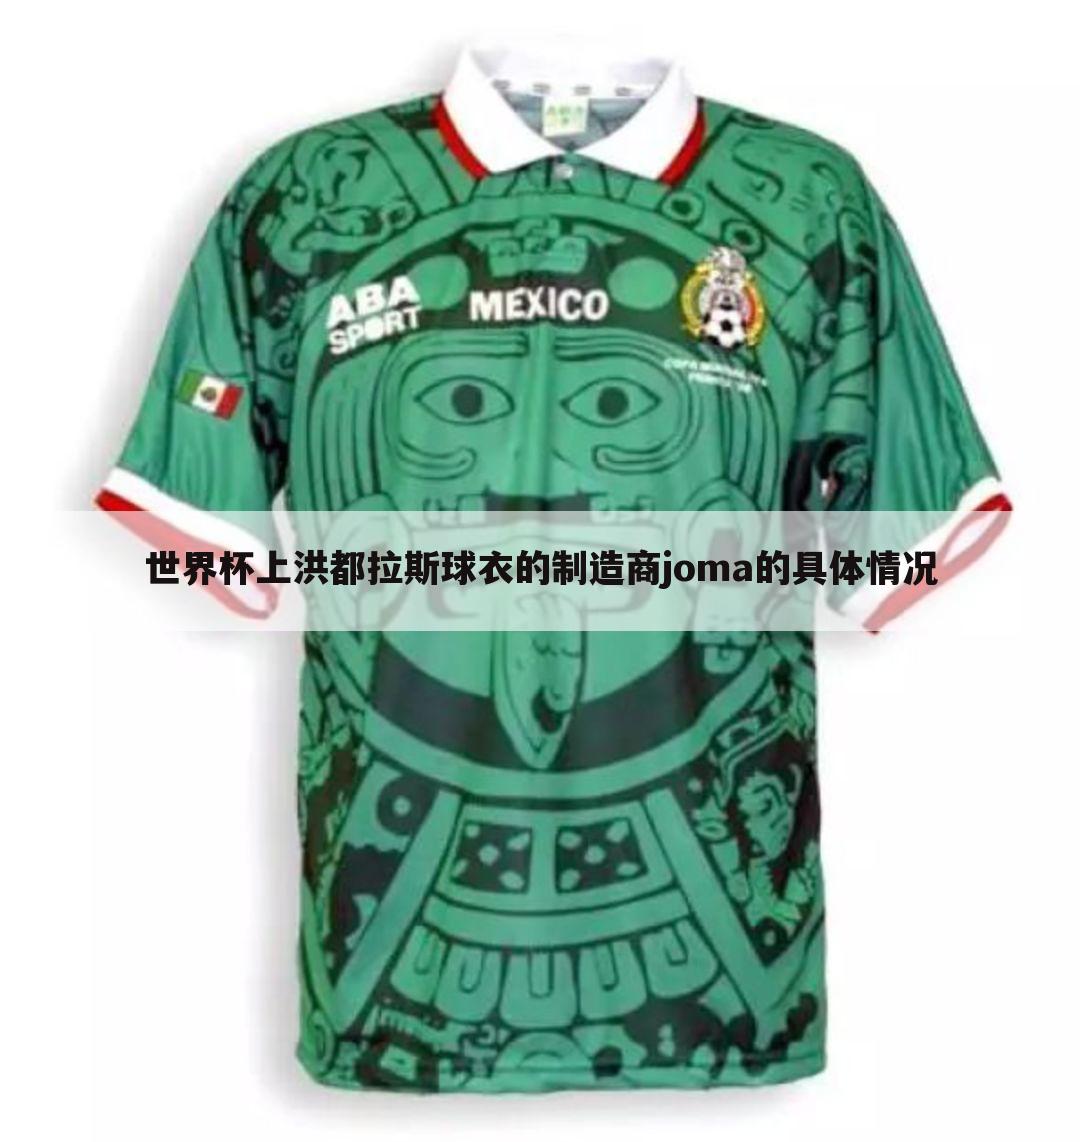 世界杯上洪都拉斯球衣的制造商joma的具体情况